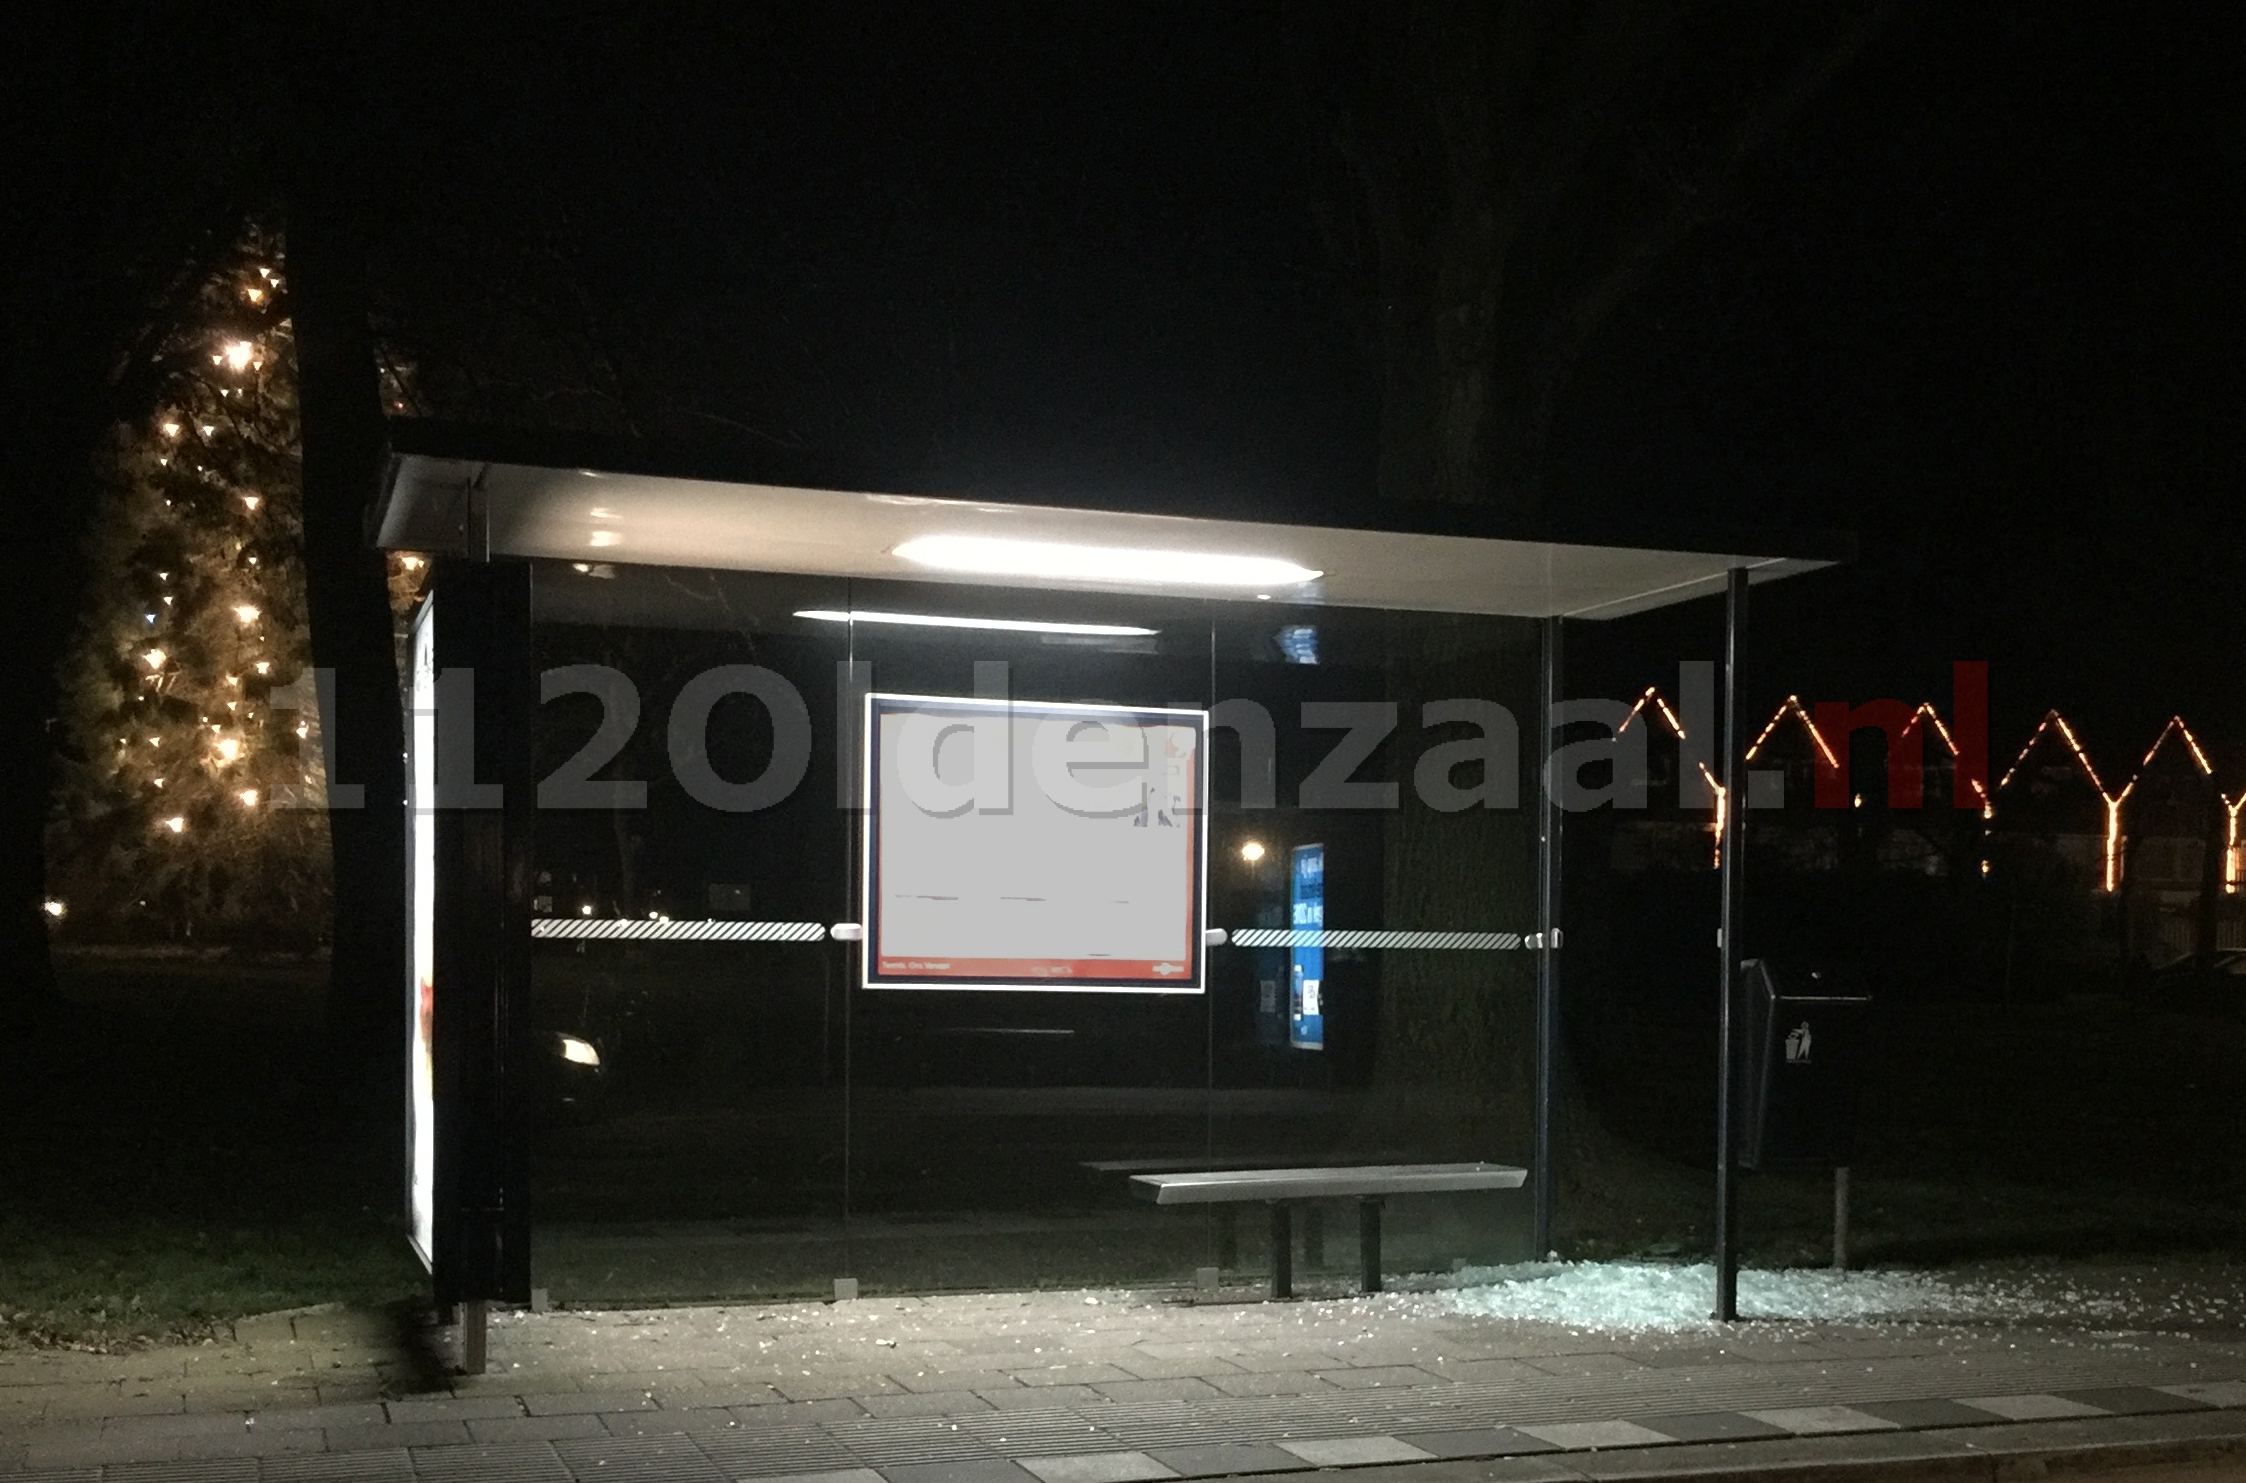 foto: Vandalen vernielen ruit bushalte Burgermeester Wallerstraat Oldenzaal